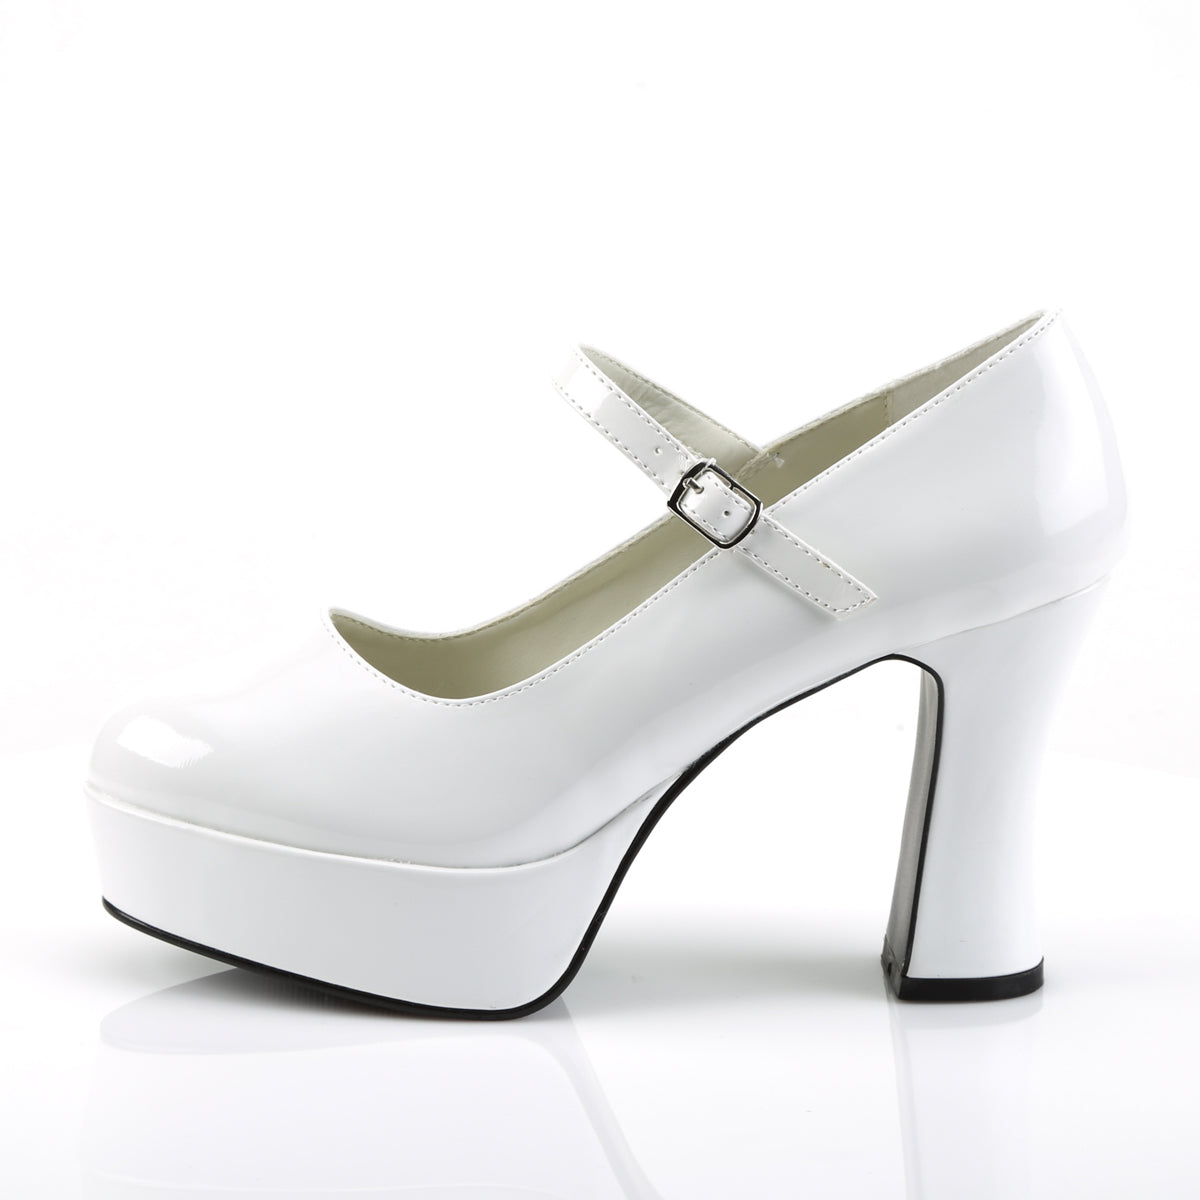 MARYJANE-50 Funtasma Fantasy White Patent Women's Shoes [Fancy Dress Footwear]